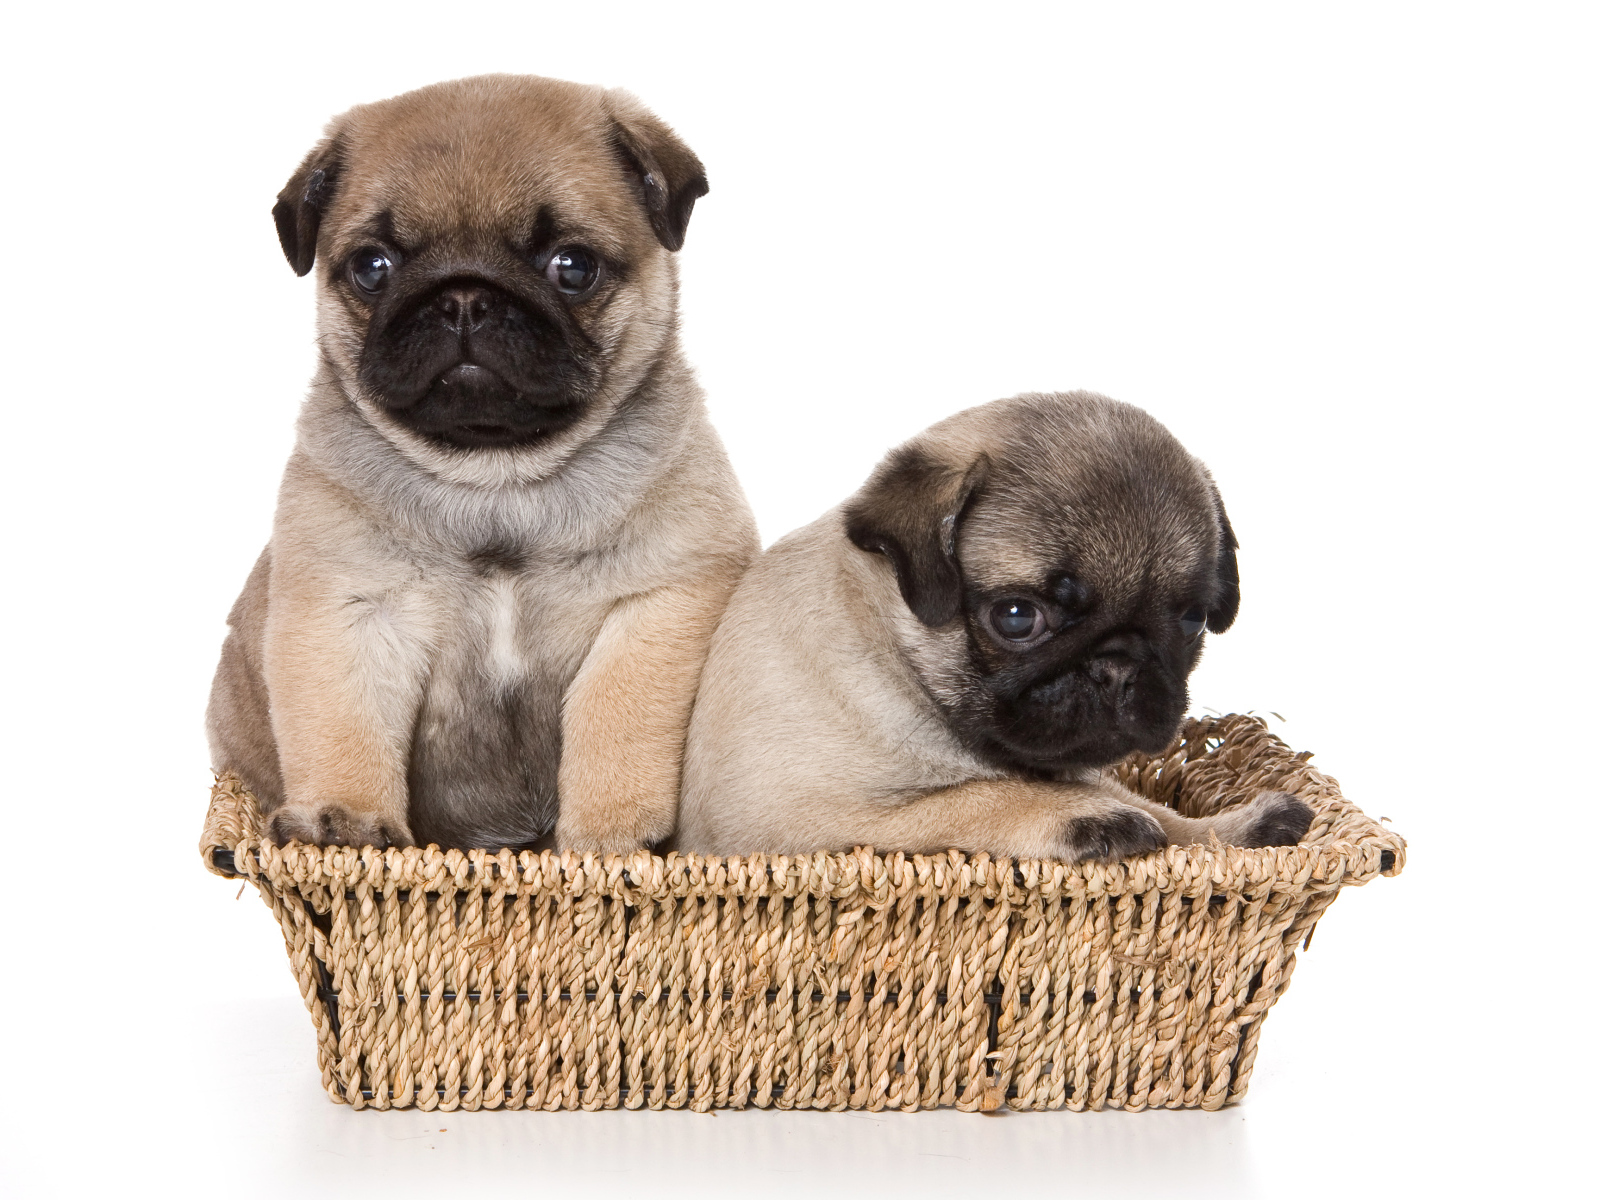 Два маленьких щенка мопса в корзине на белом фоне